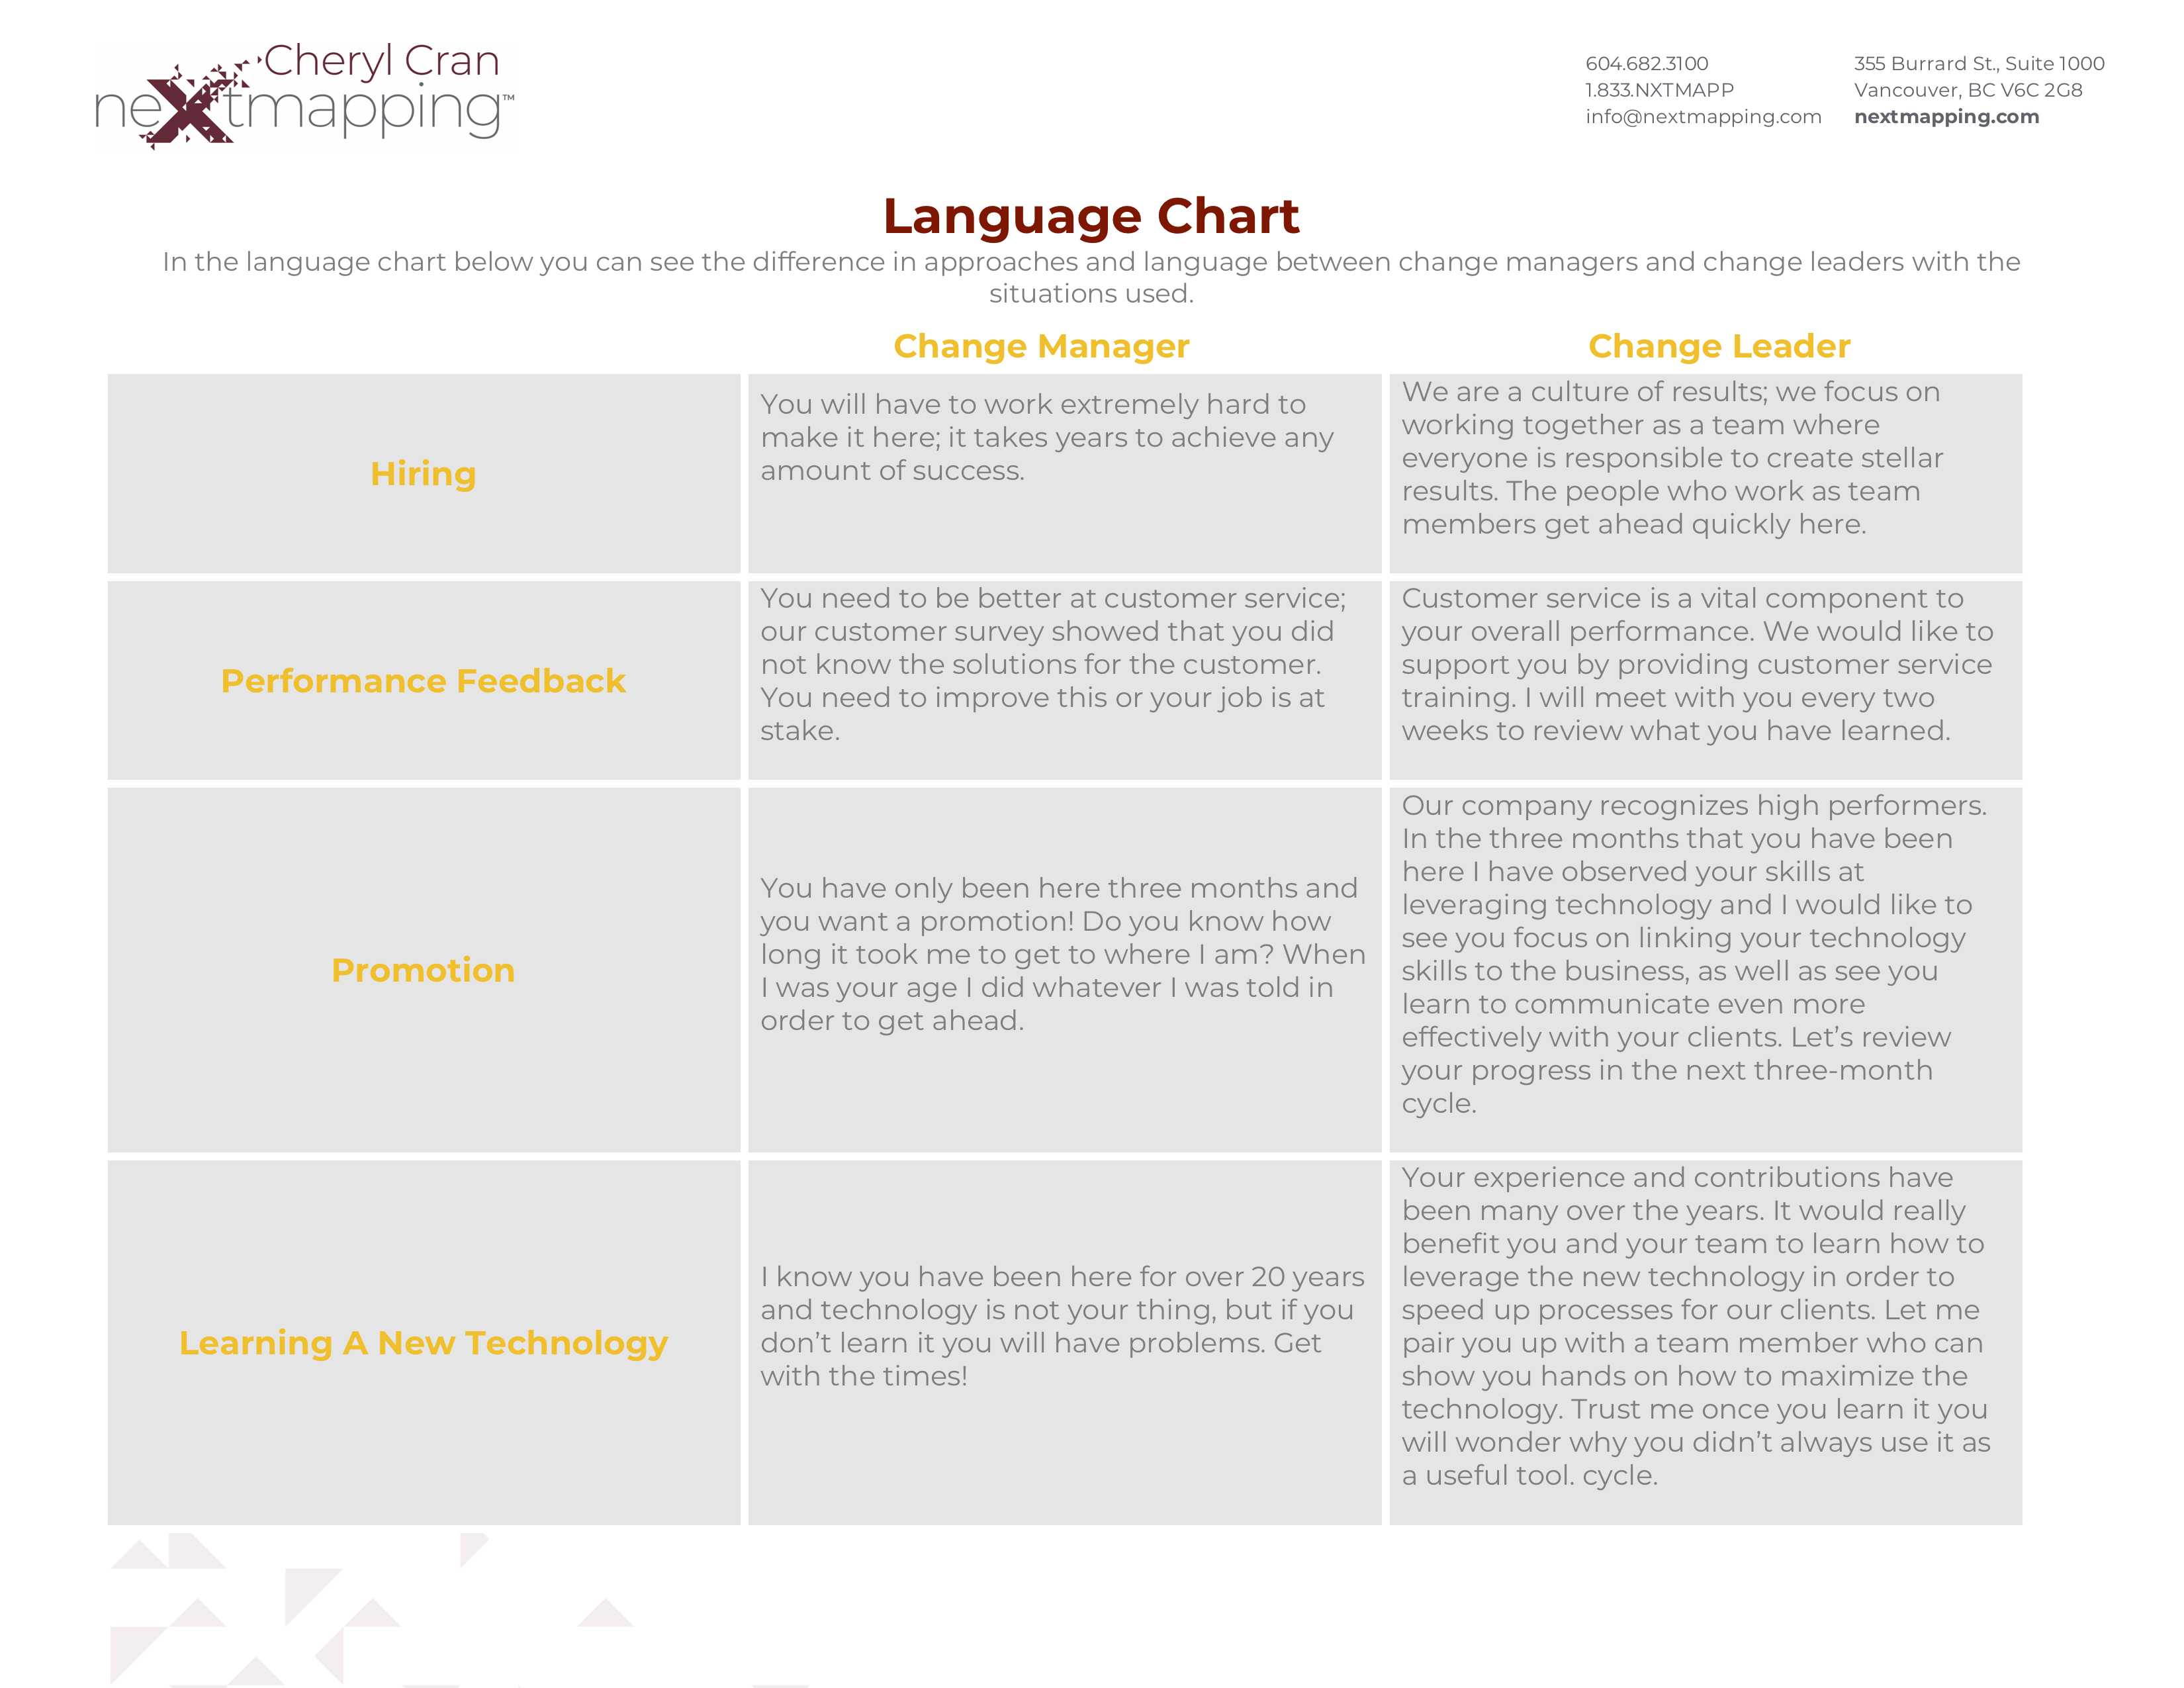 Text Language Chart